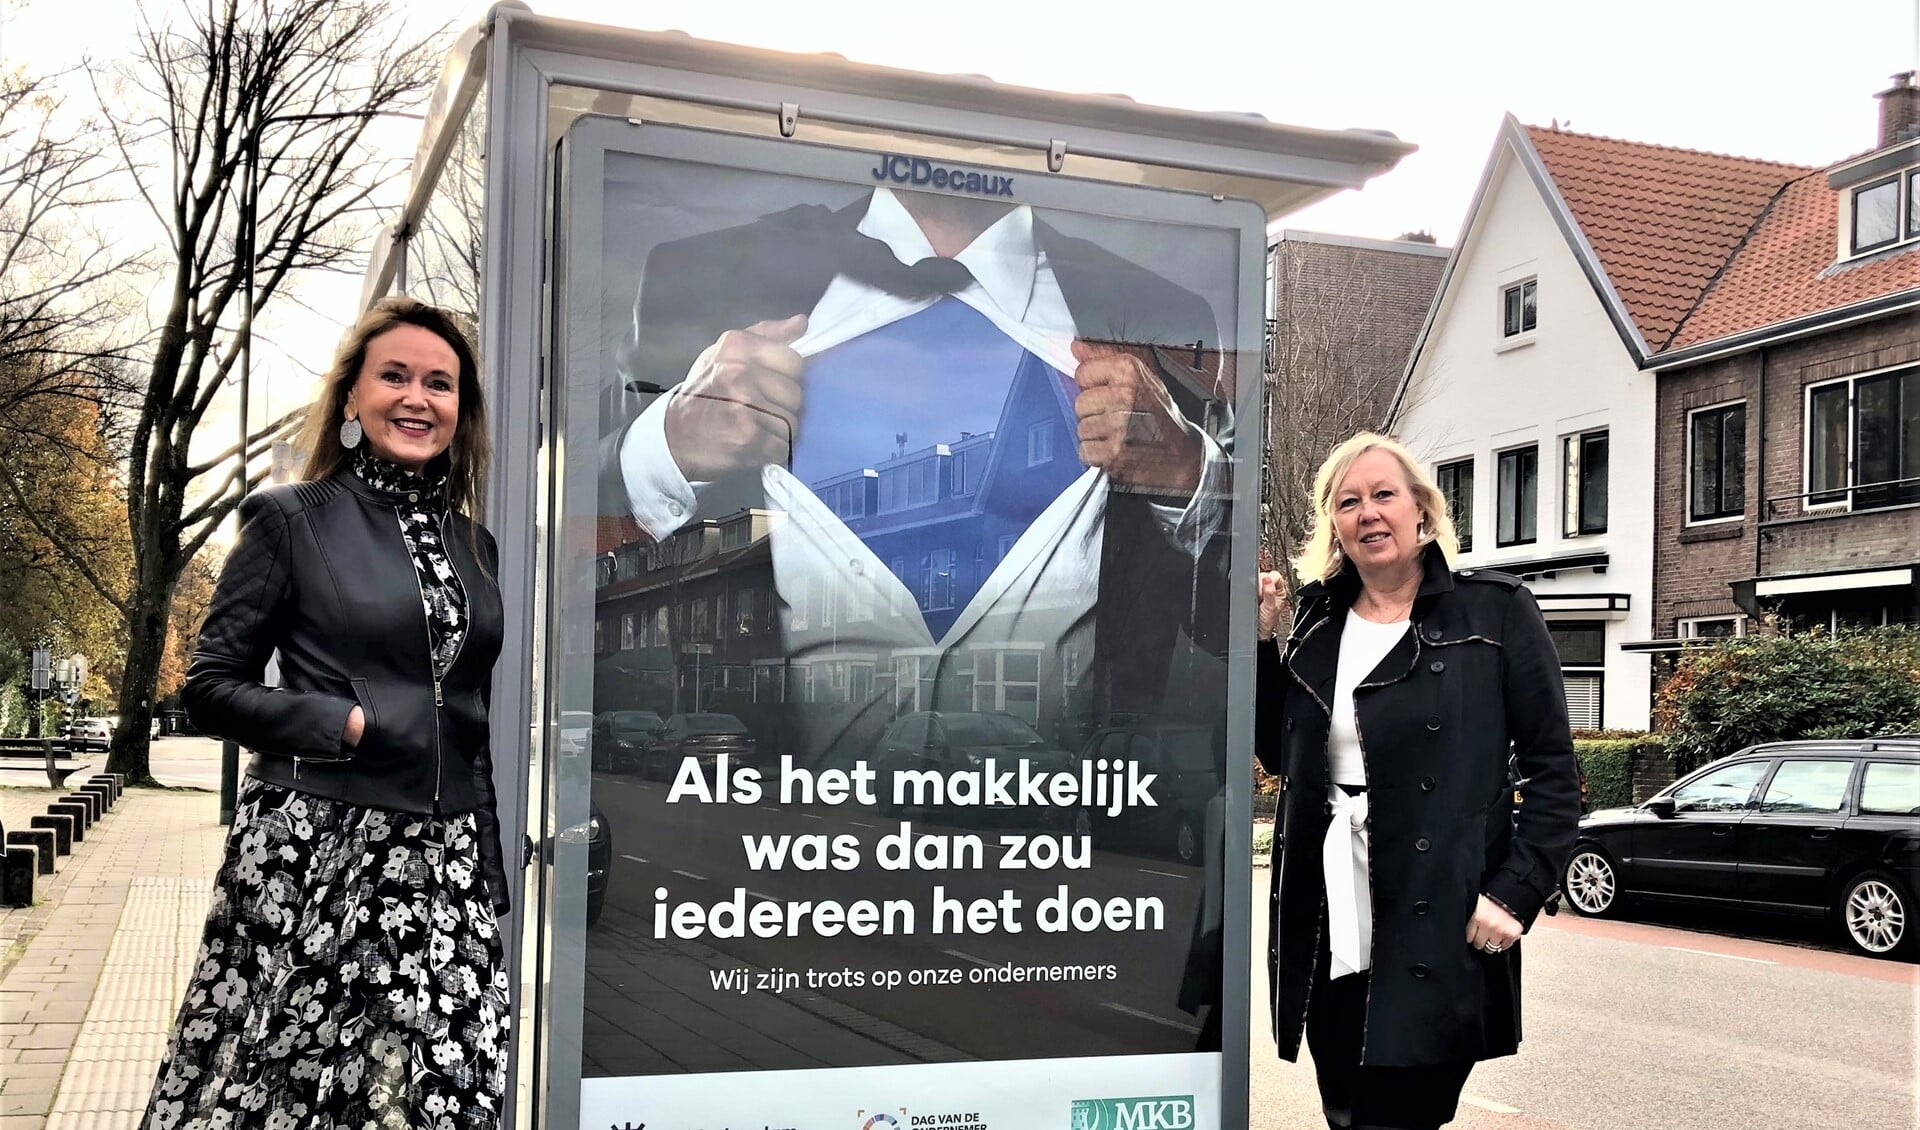 Wethouder Astrid van Eekelen en voorzitter MKB L'dam-V'burg Benedikte Zijlstra bij de poster van een campagne voor lokale ondernemers (foto: gemeente LV).